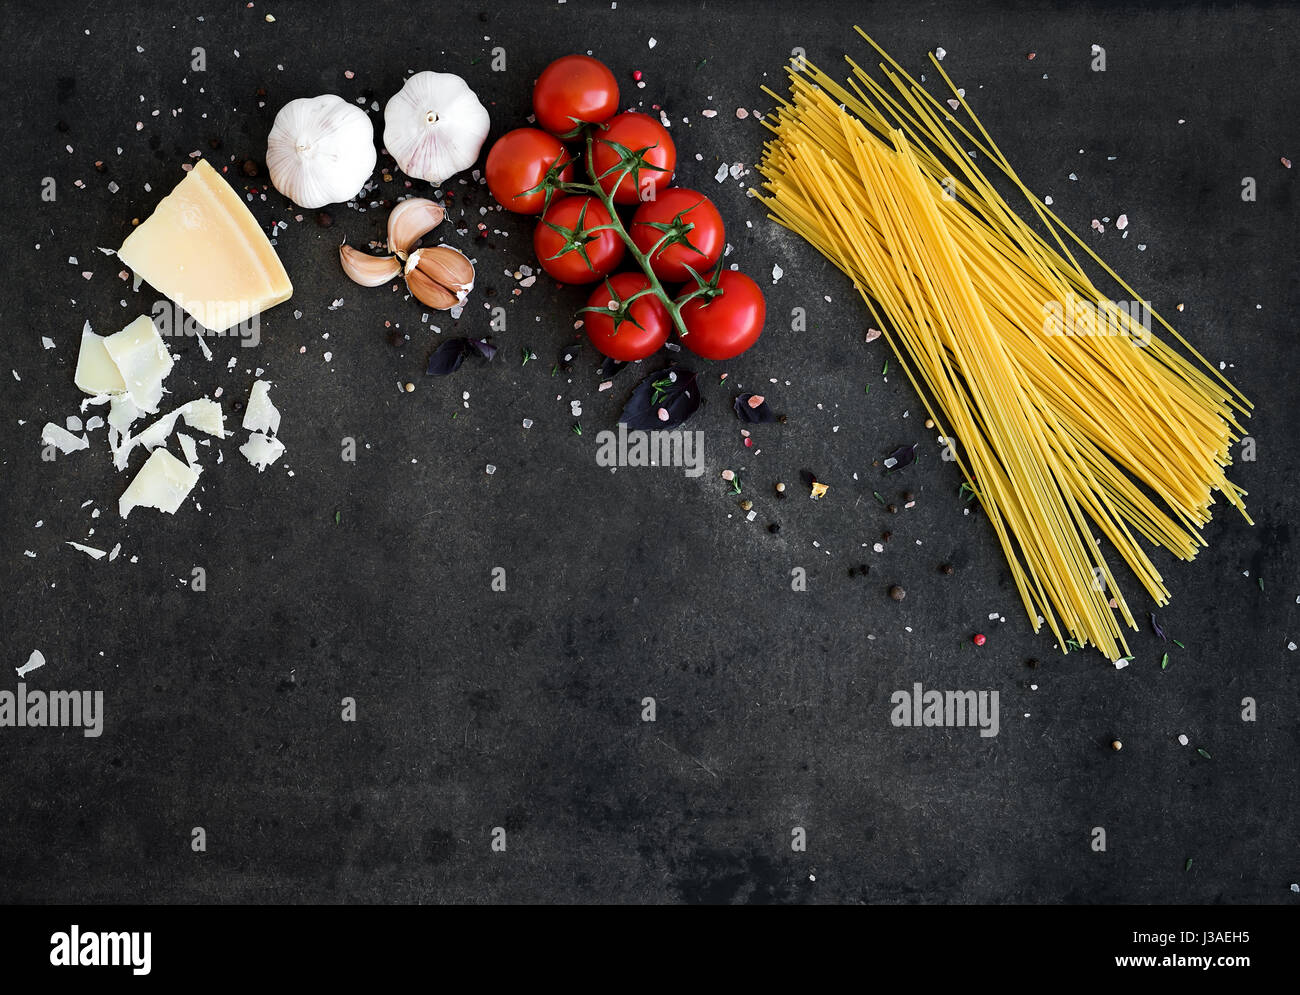 Essen-Frame. Pasta Zutaten. Cherry-Tomaten, Spaghetti Nudeln, Knoblauch, Basilikum, Parmesan und Gewürzen auf dunklen Grunge Hintergrund, Textfreiraum, Horizontal ausgerichtet Stockfoto